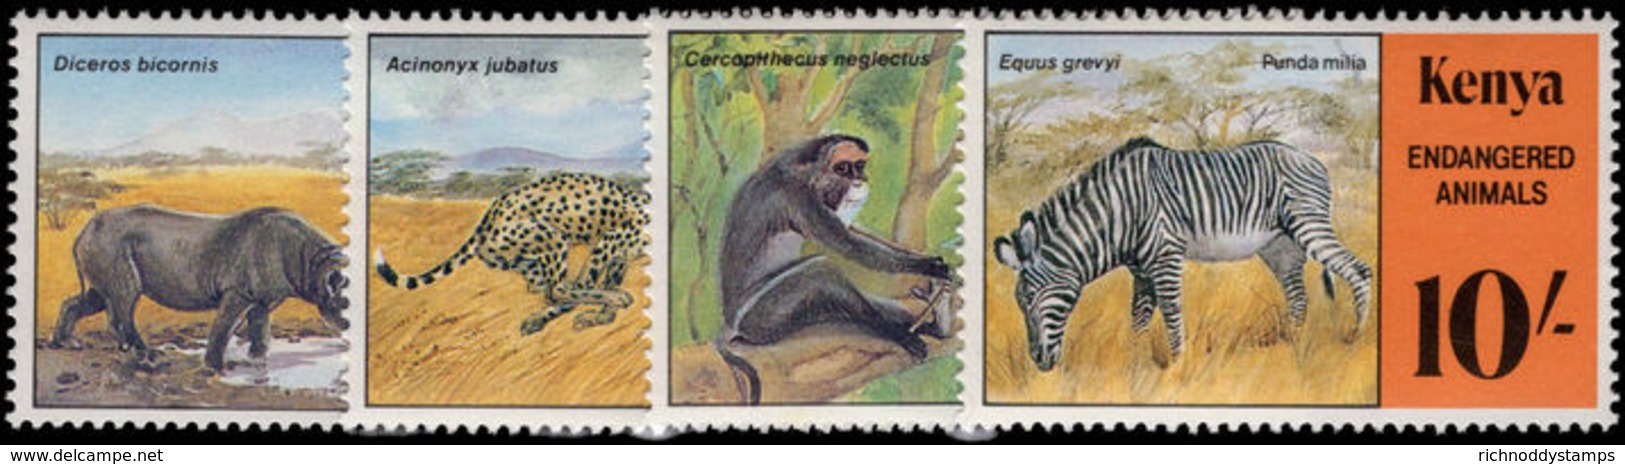 Kenya 1985 Endangered Species Unmounted Mint. - Kenya (1963-...)